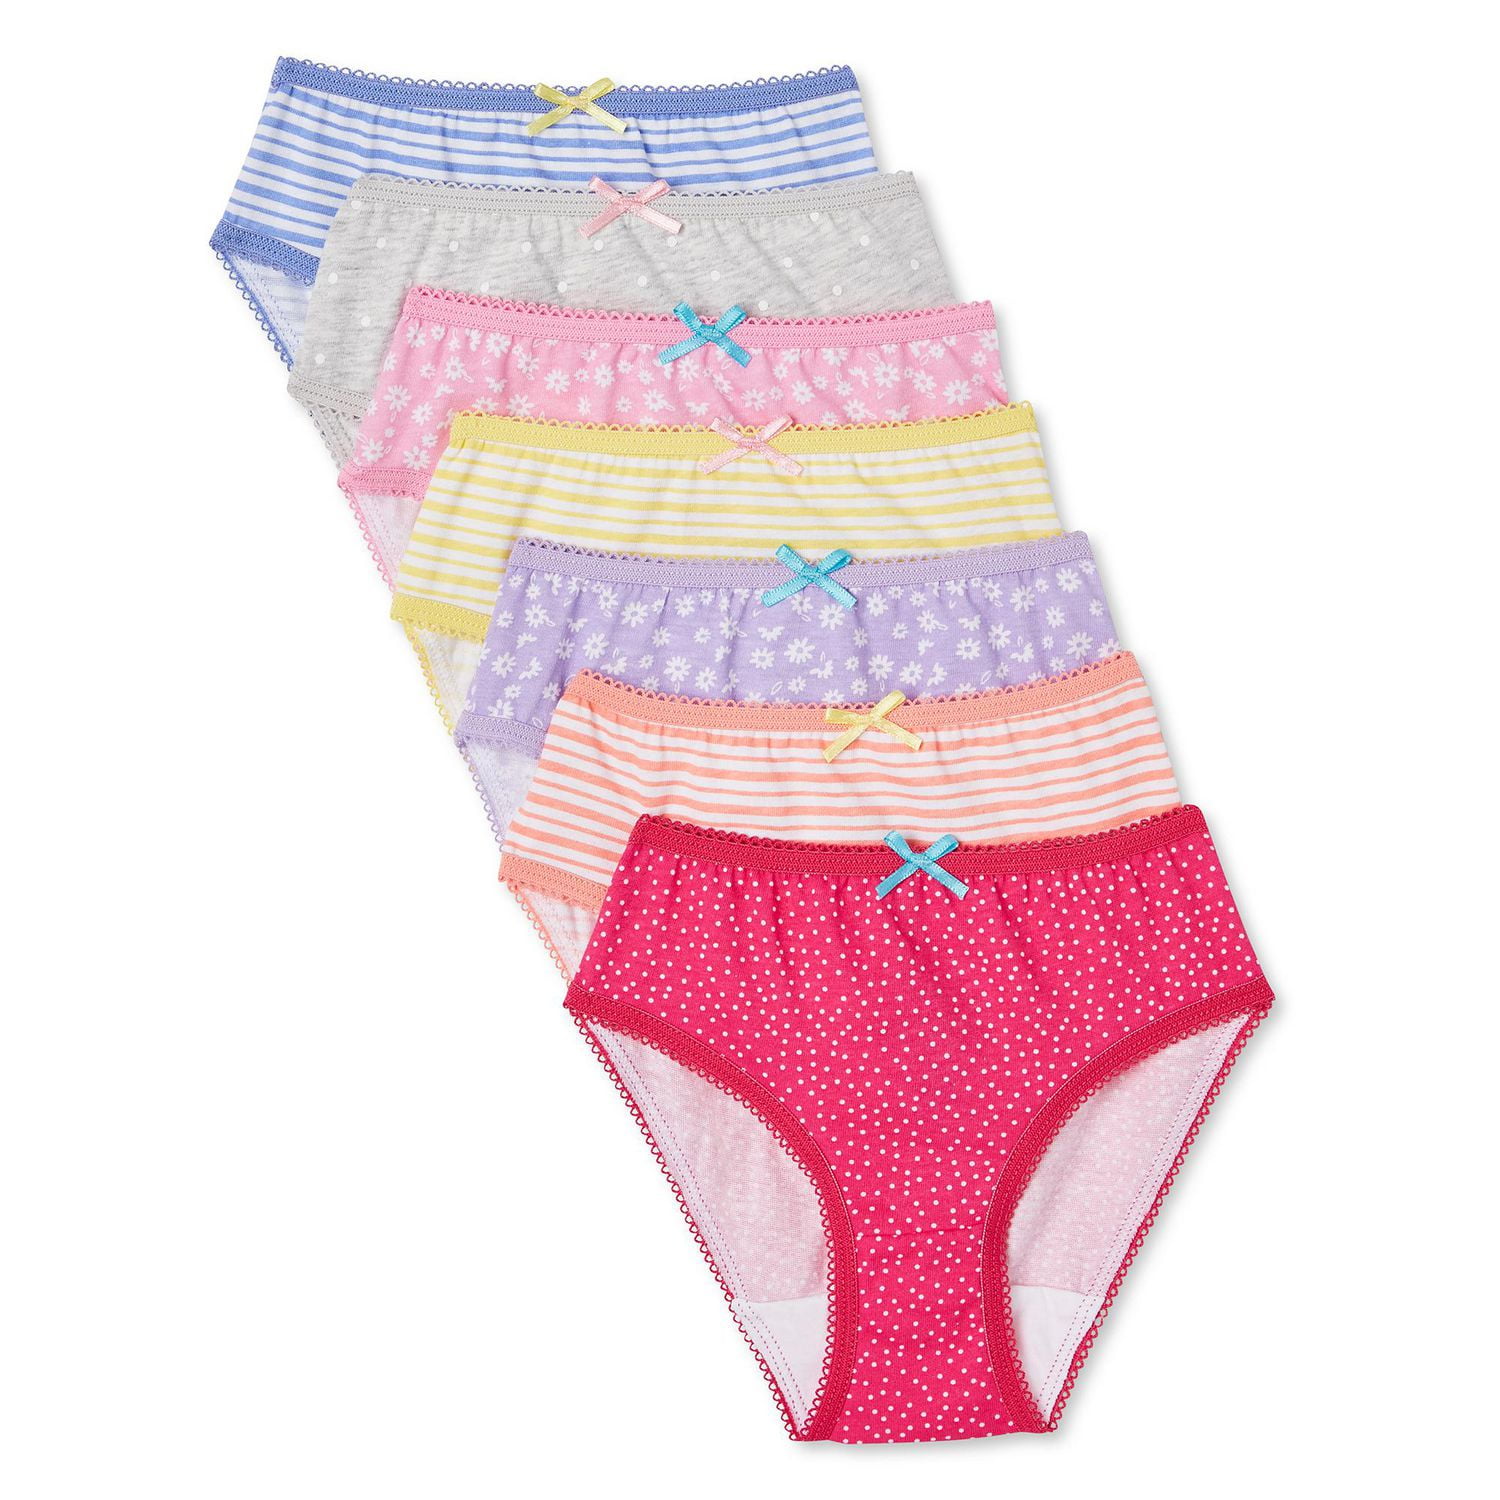 Toddler Underwear Kids Undies Girls Cotton Panties Size 3-4T (Pack of 6)